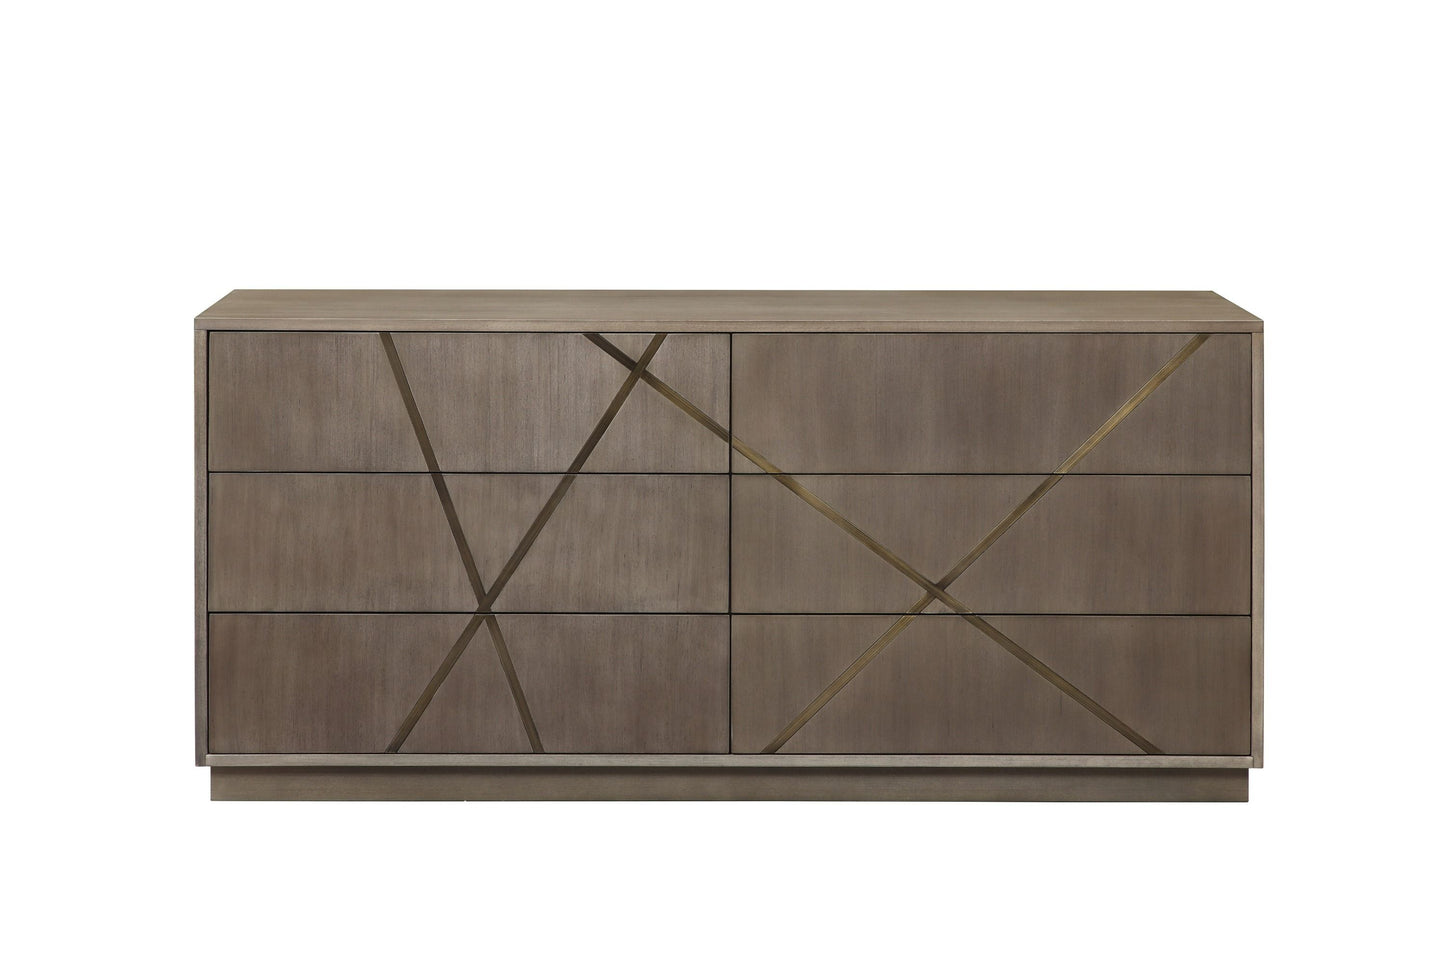 Modrest Nixa - Modern Beige Velvet + Brushed Bronze + Birch Bedroom Set